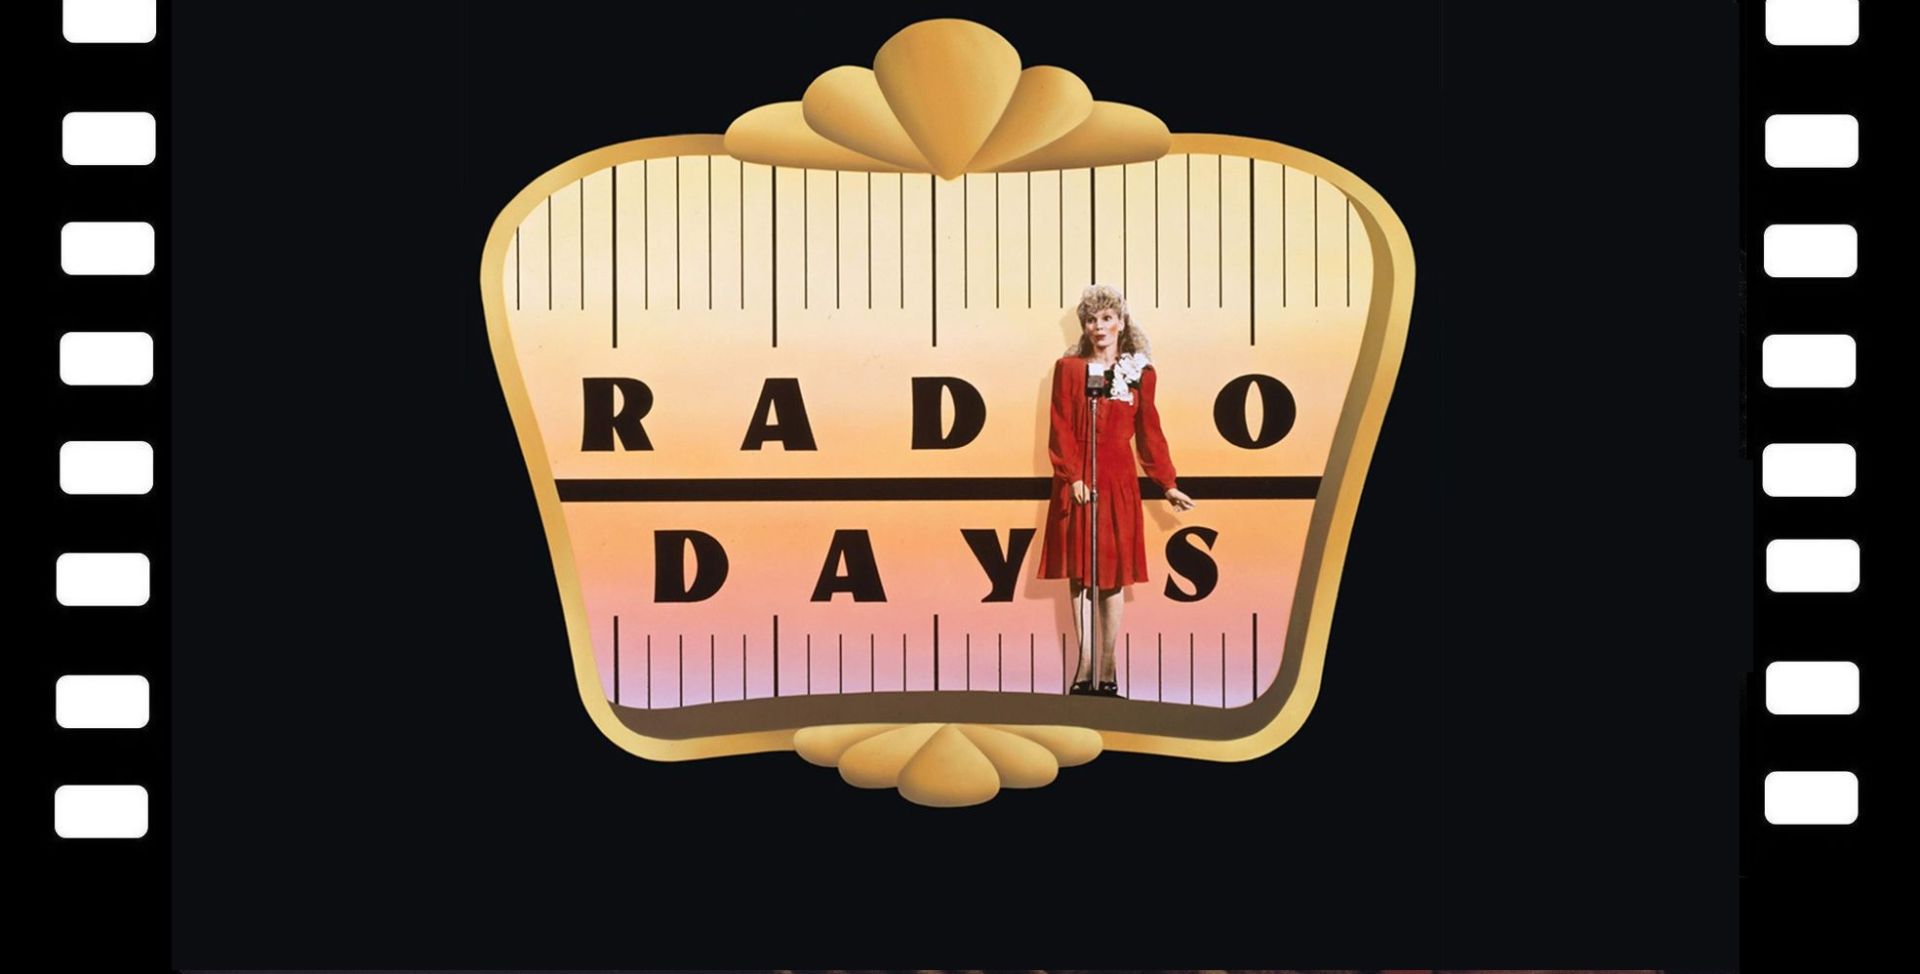 θέμα της αφίσας (ένα παλιό ραδιόφωνο και μια γυναίκα) της ταινίας Μέρες ραδιοφώνου